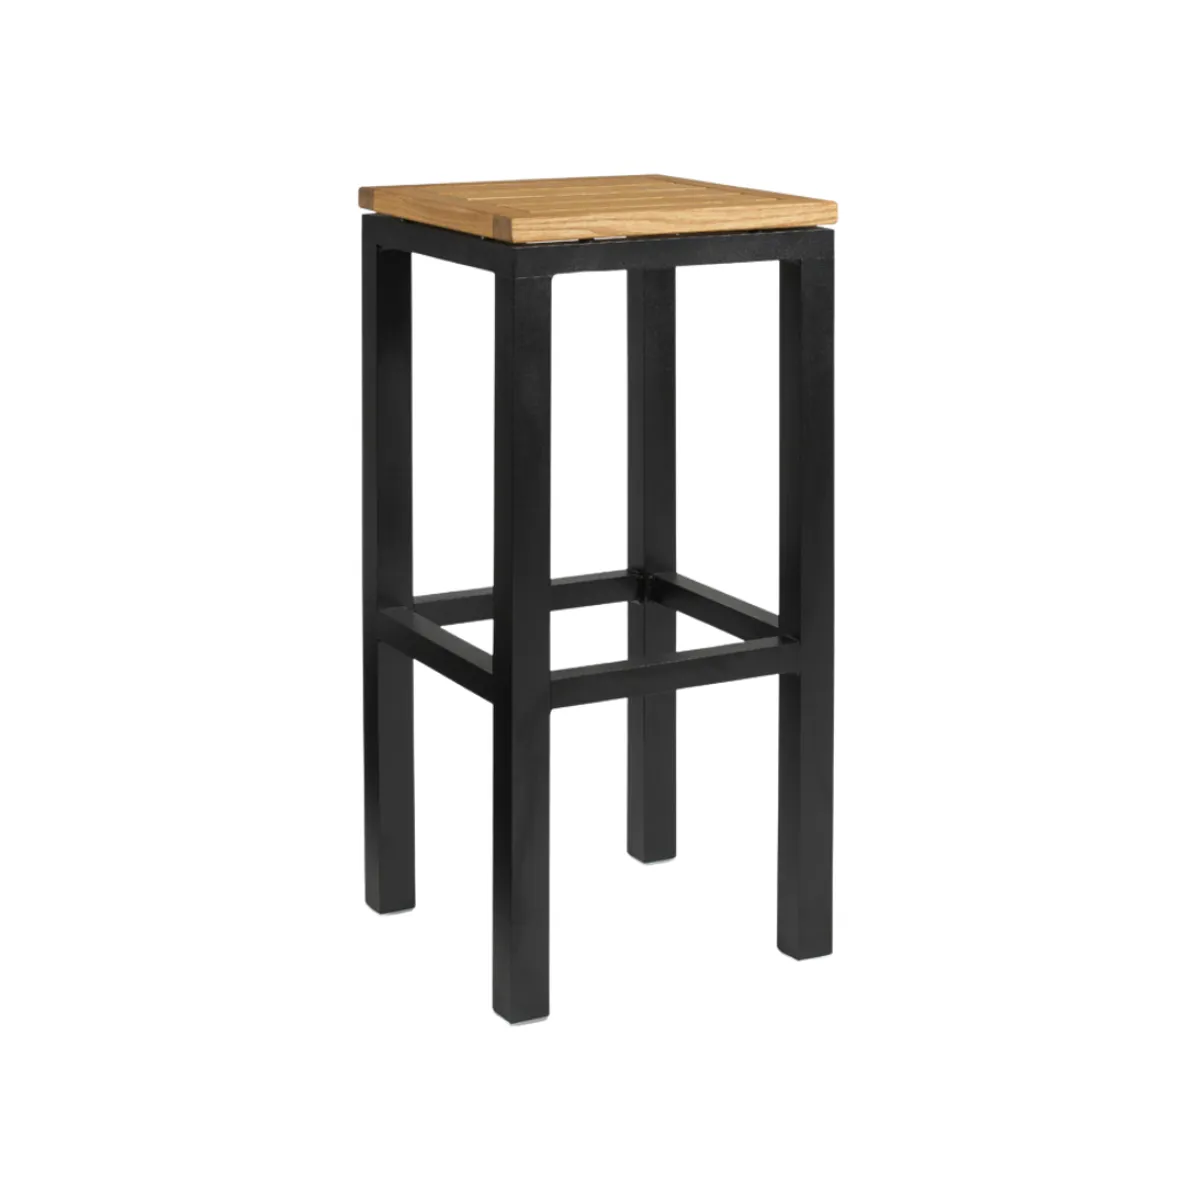 Oasis rectangular bar stool